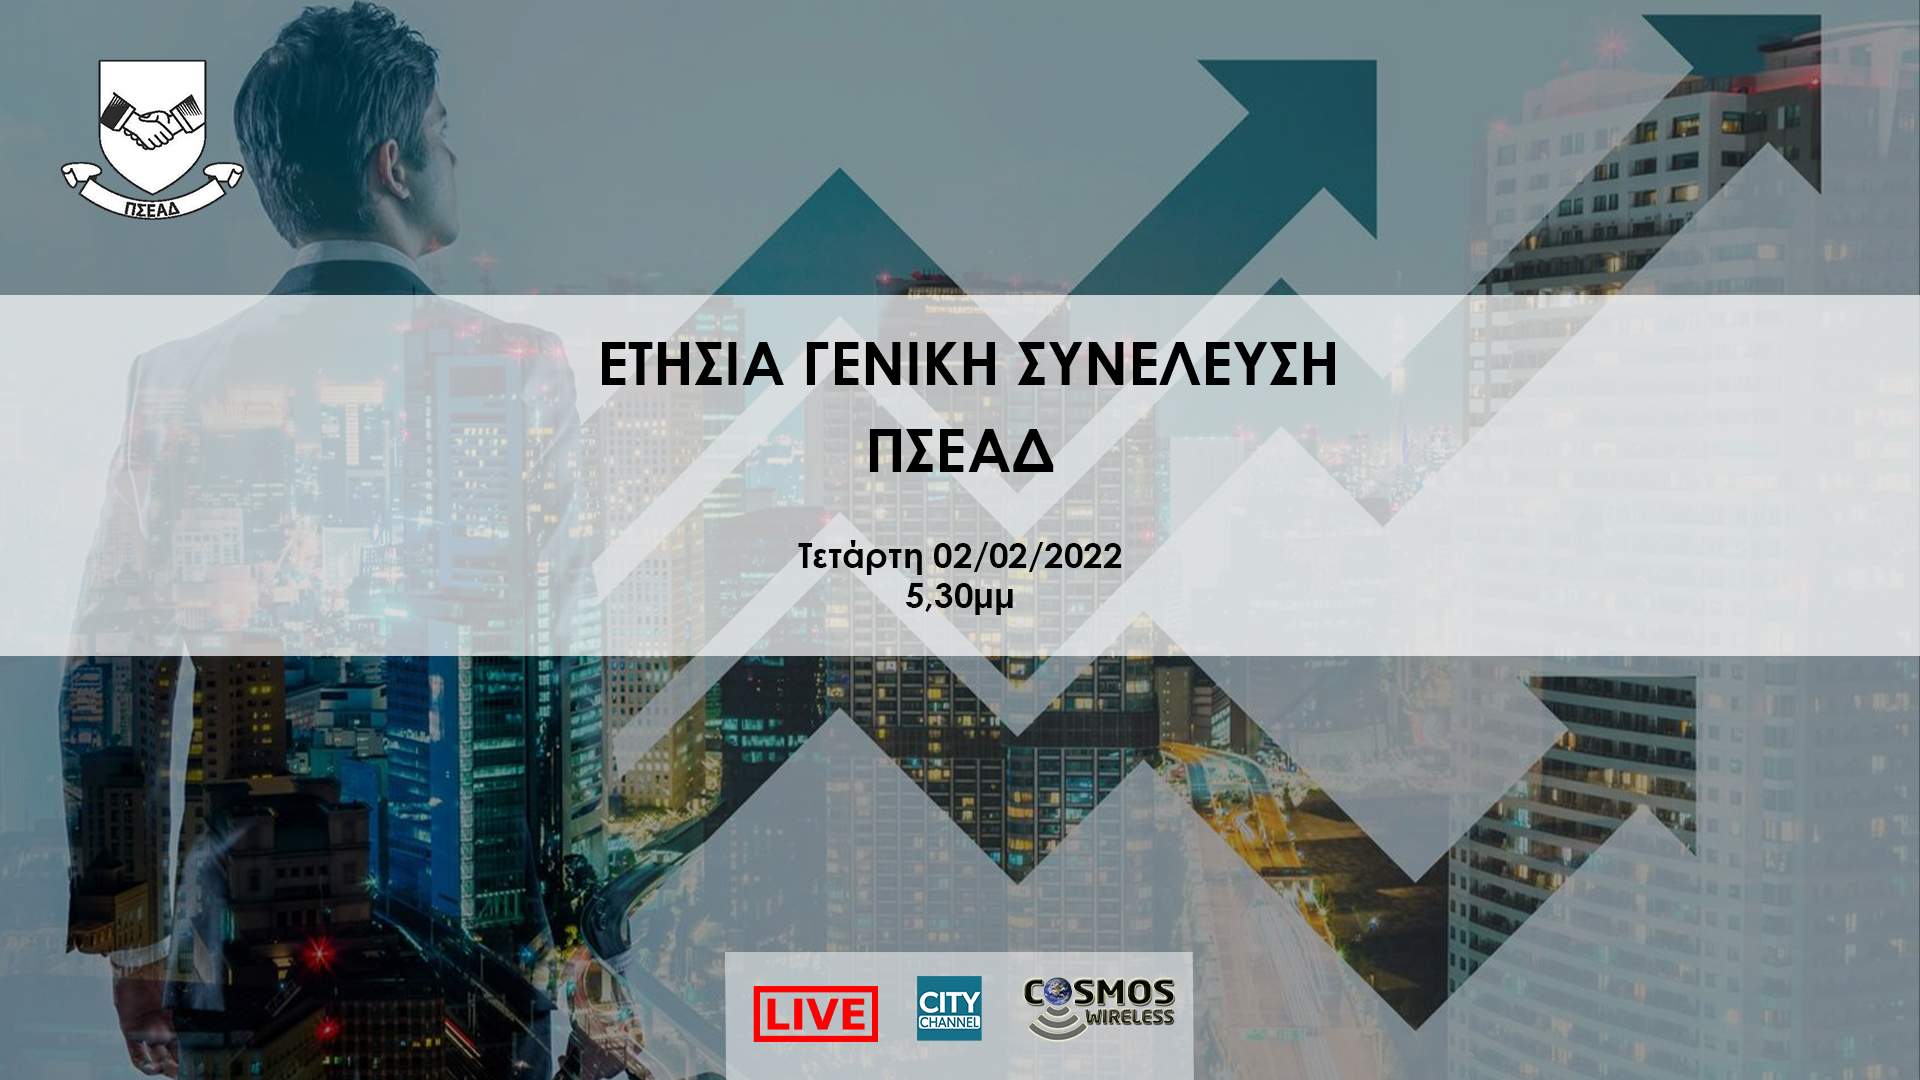 LIVE – ETHΣIA ΓENIKH ΣYNEΛEYΣH ΠΣΕΑΔ | Τετάρτη 02/02/2022